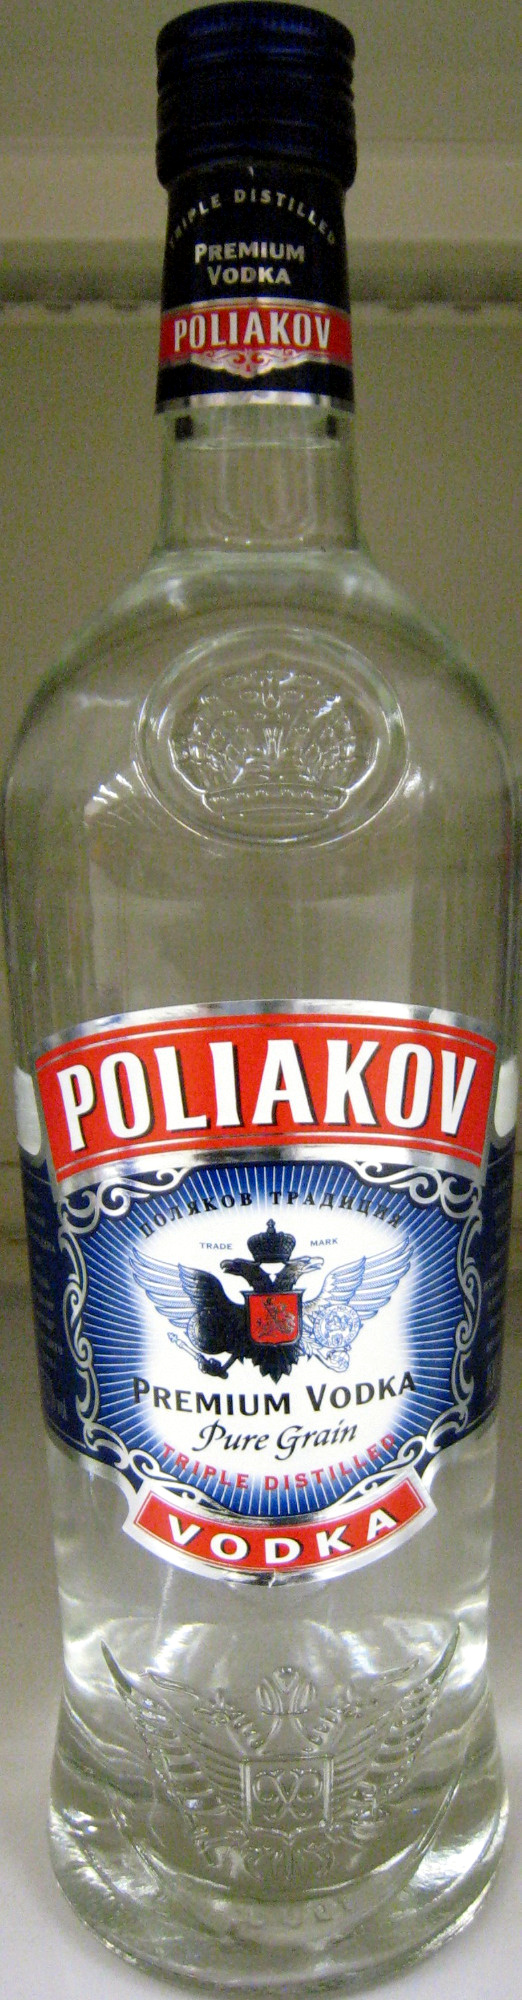 Premium Vodka - Product - fr